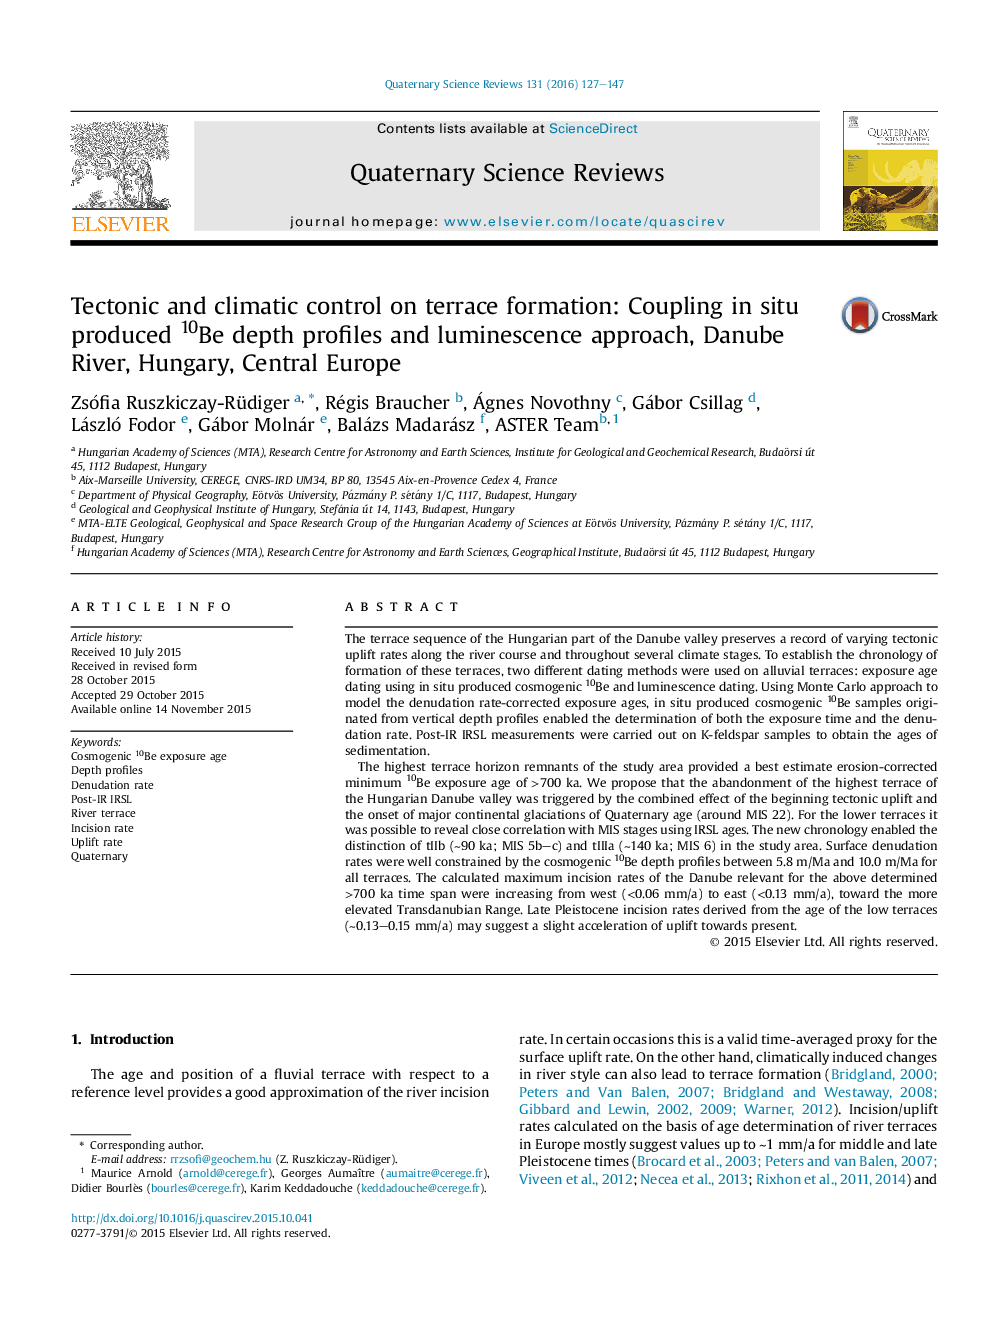 کنترل تکتونیکی و اقلیمی بر روی شکل گیری تراس: اتصال در محل، پروفیل عمق 10 و عمق لنز، رودخانه دانوب، مجارستان، مرکز اروپا 